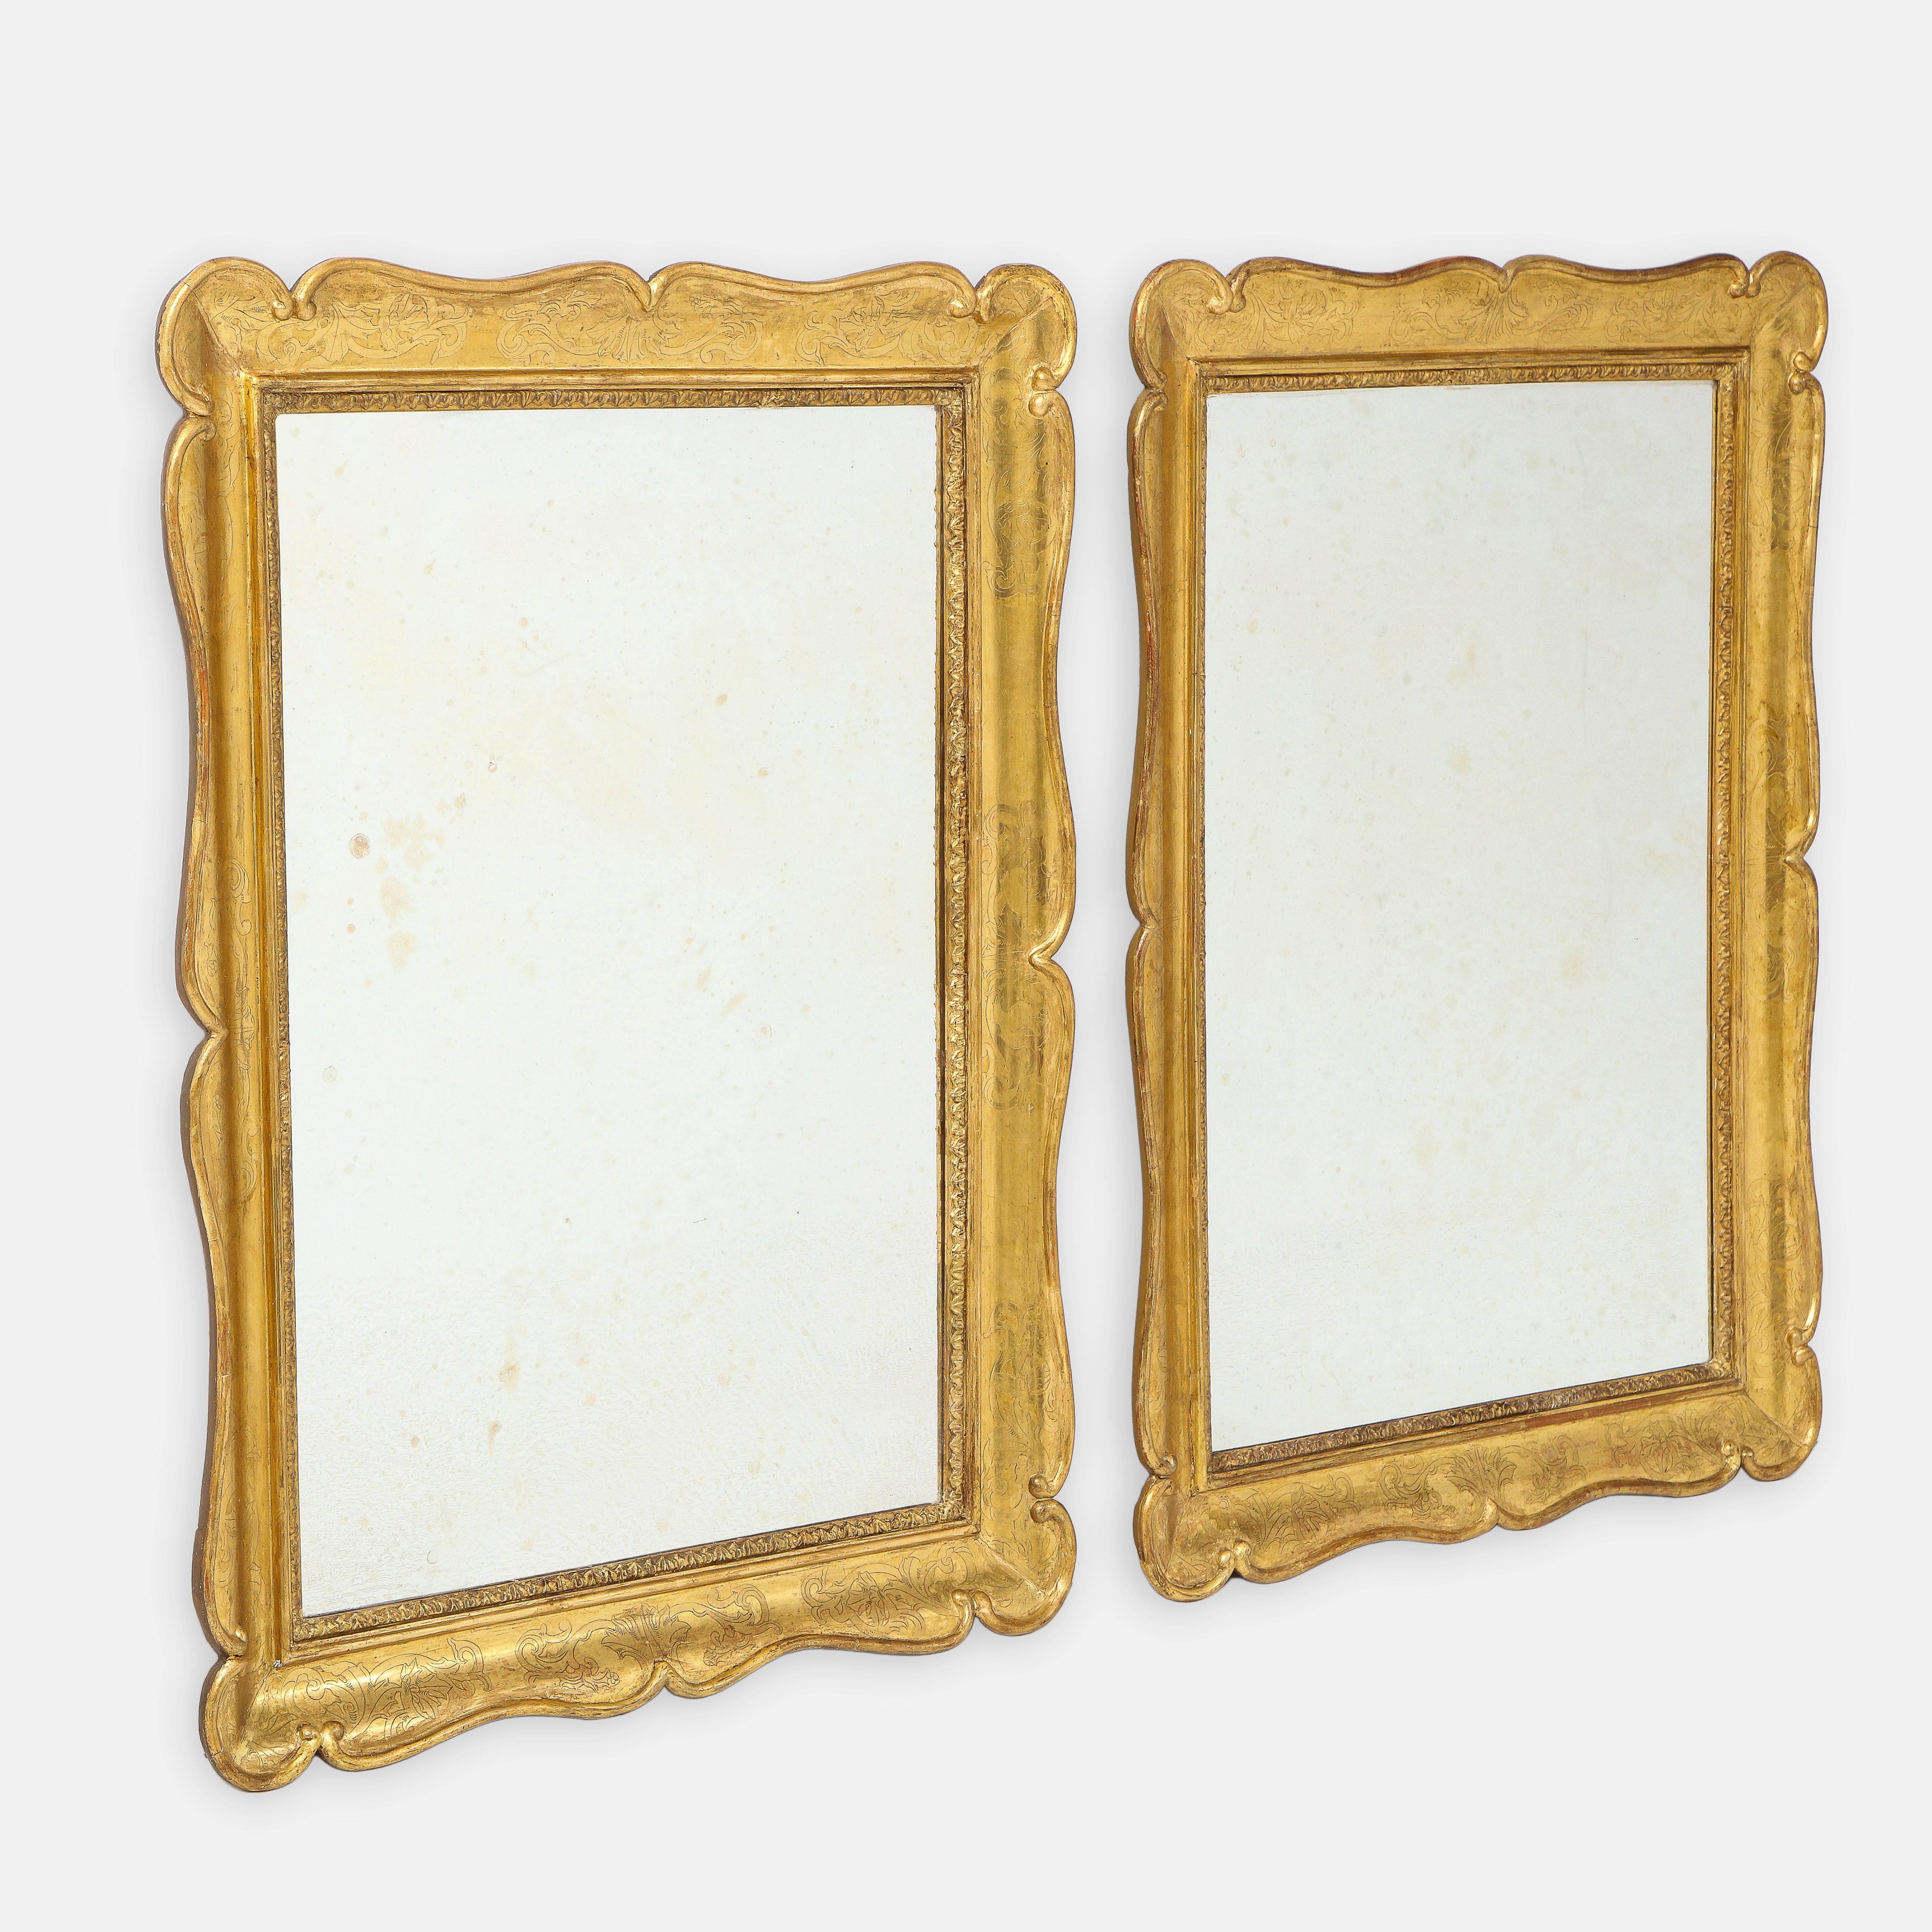 Paire d'exquis miroirs rectangulaires italiens en bois doré sculpté du XIXe siècle. Chaque miroir conserve la plupart de sa finition originale et riche en satin doré, avec des bords délicatement sculptés et des feuilles d'acanthe finement sculptées